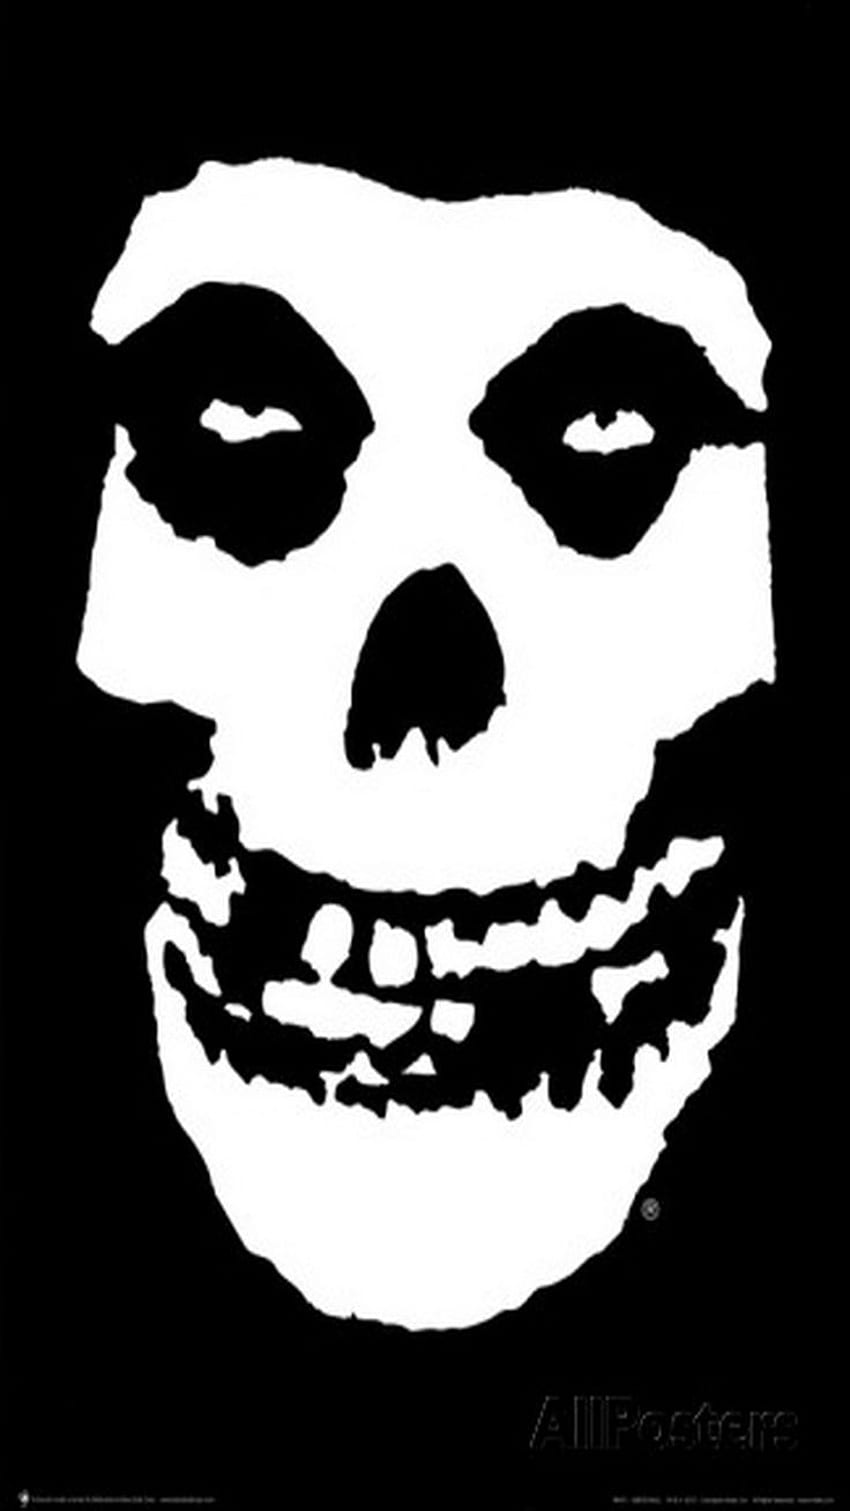 TAP DAN DAPATKAN APLIKASI! Hard Skull Black Misfits Punk Rock, iPhone Punk Rock wallpaper ponsel HD